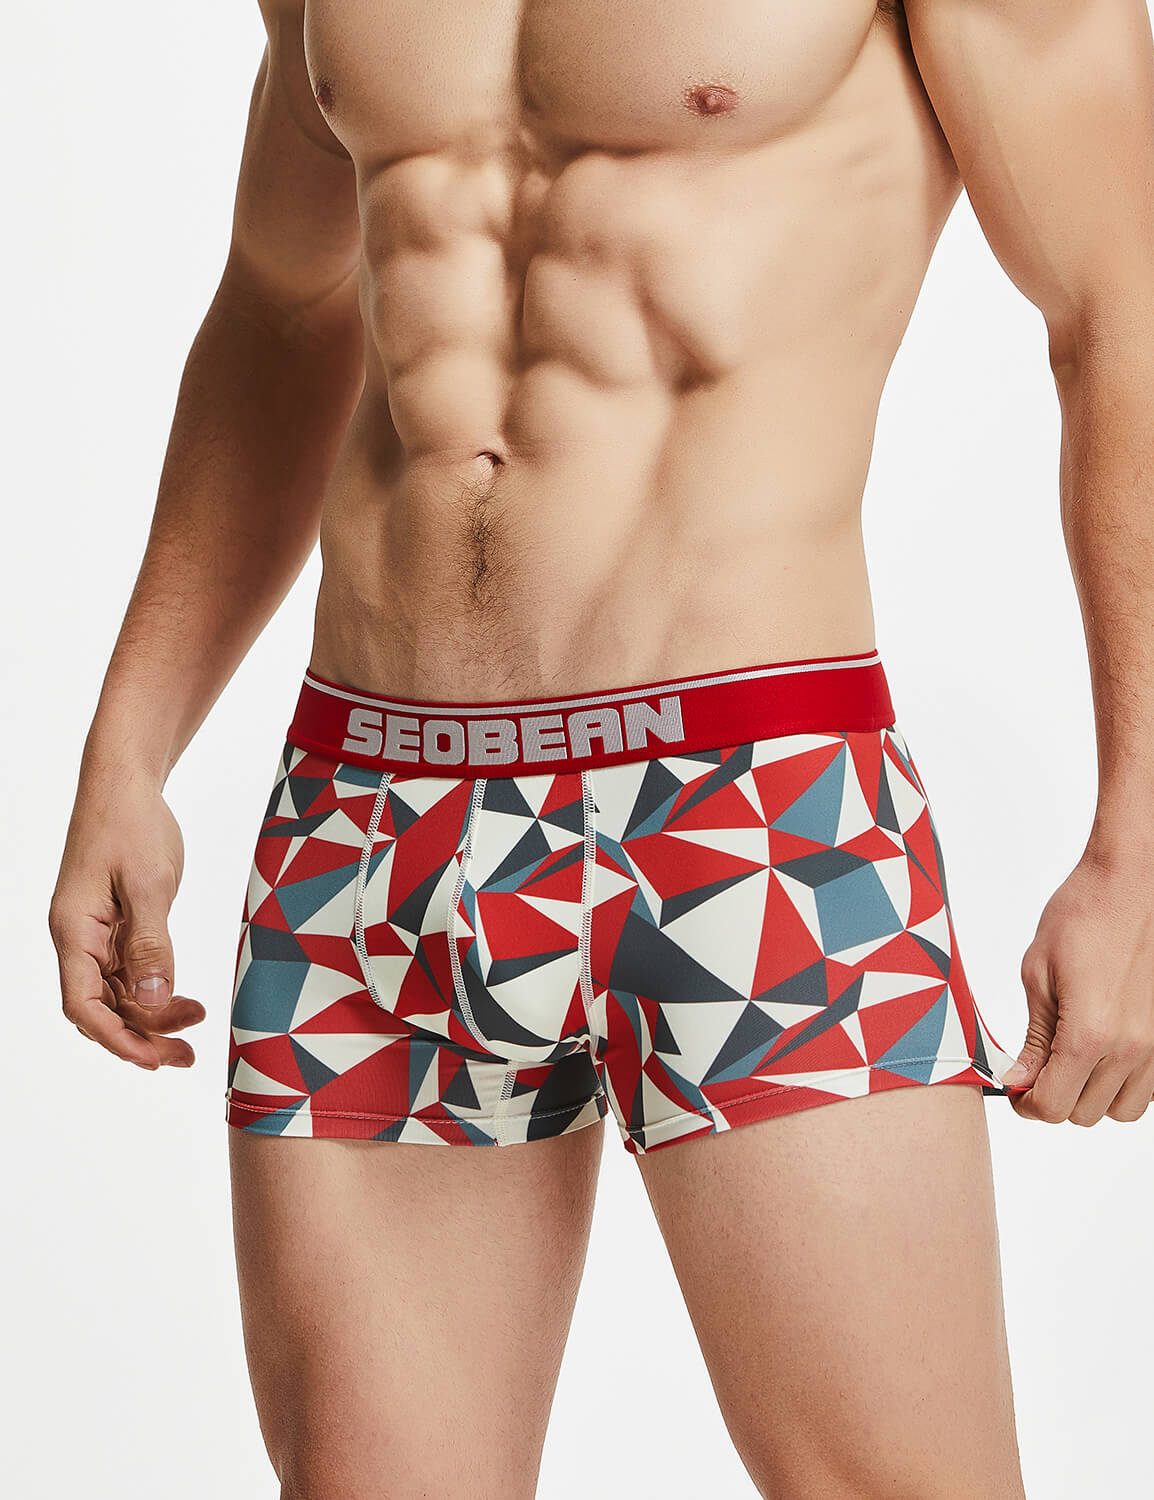 SEOBEAN Mens Low Rise Sexy Color Block Trunks Boxer Briefs 10209 – SEOBEAN®